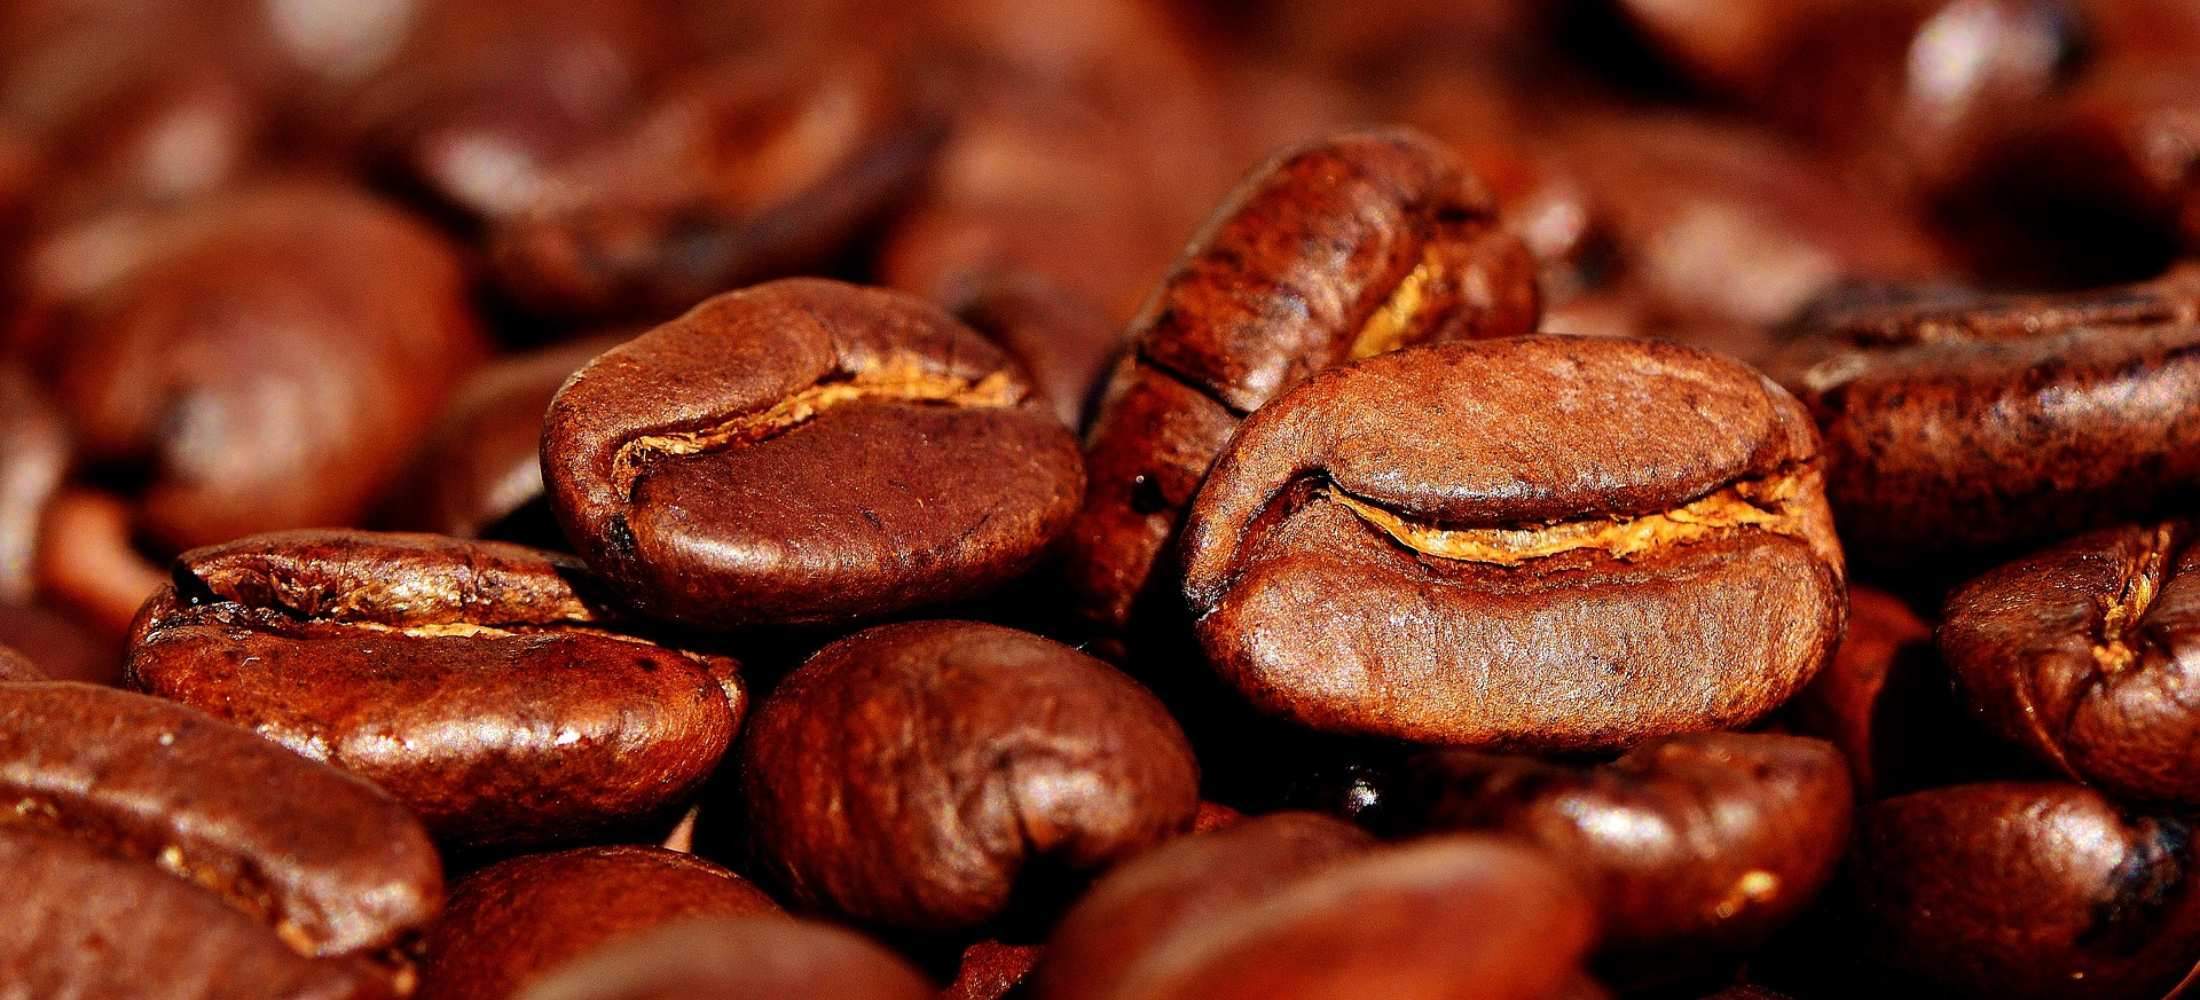 Top 10 Keurig Troubleshooting Tips and Common Keurig Coffeemaker Issues